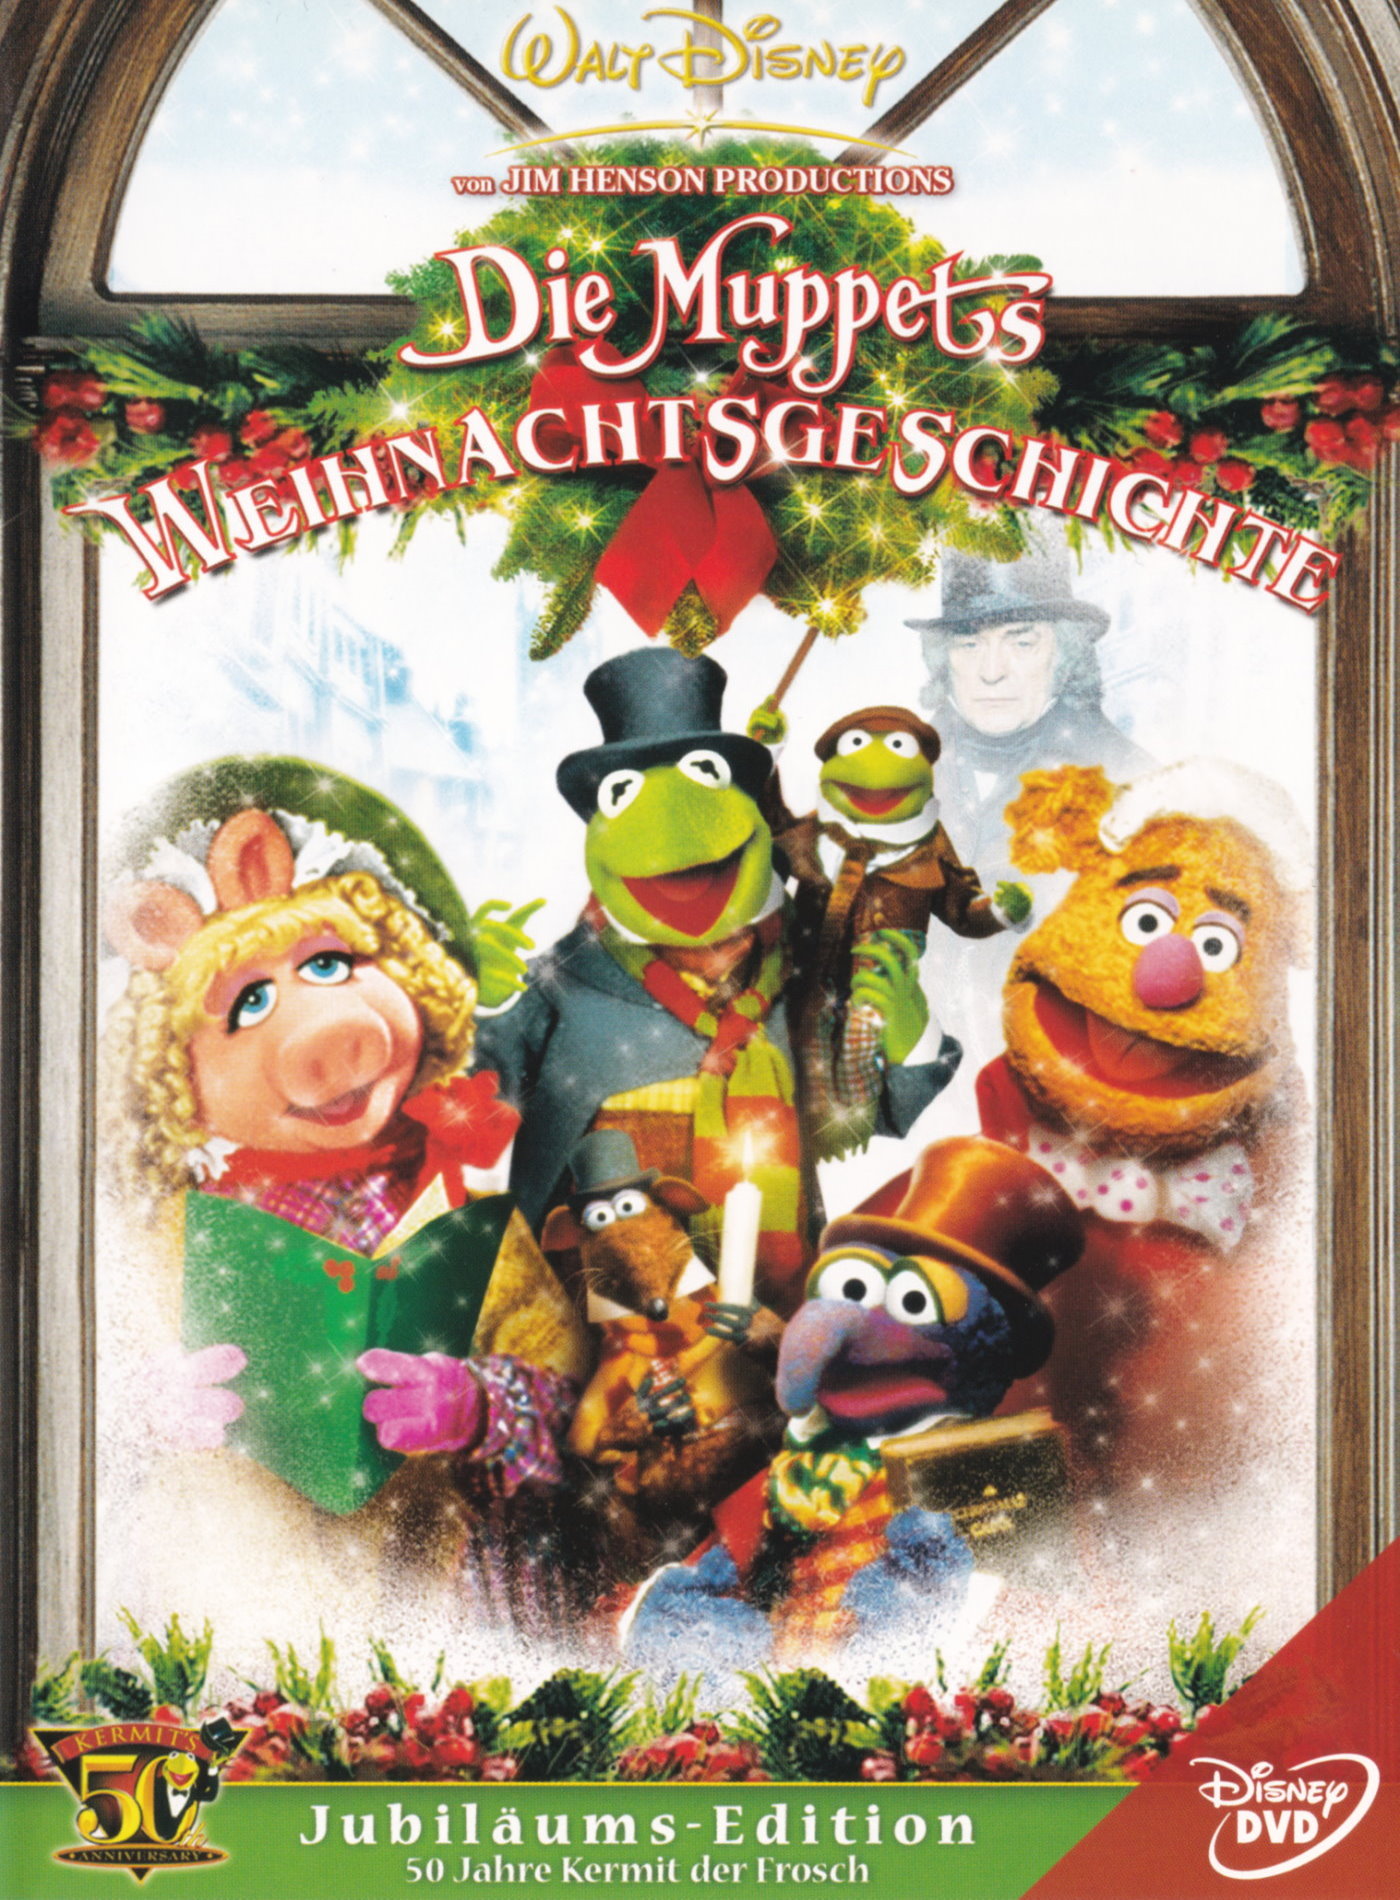 Cover - Die Muppets Weihnachtsgeschichte.jpg